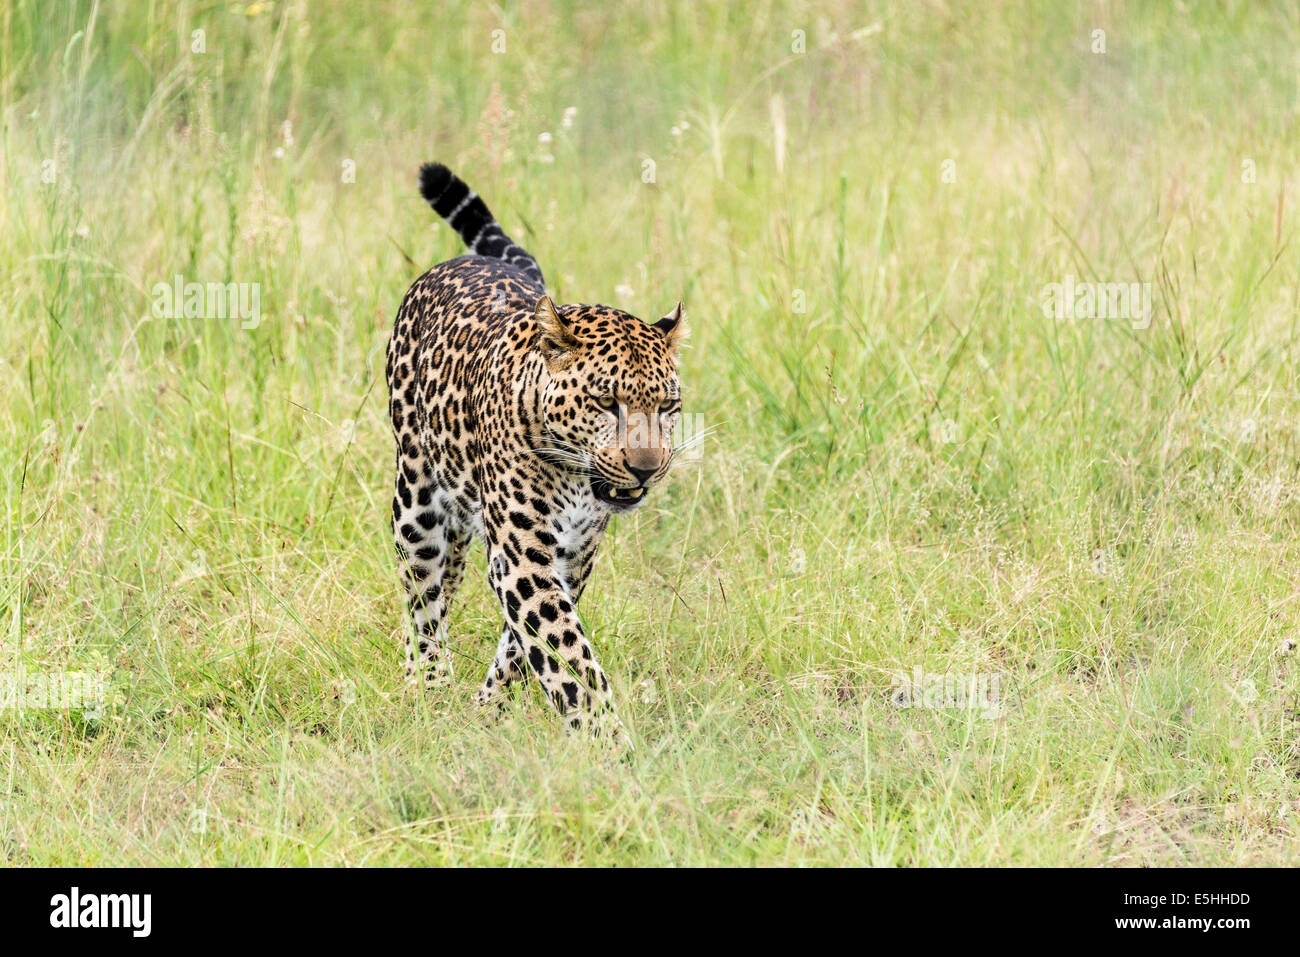 Cheetah (Acinonyx jubatus), Nambiti Reserve, Kwa-Zulu Natal, South Africa Stock Photo